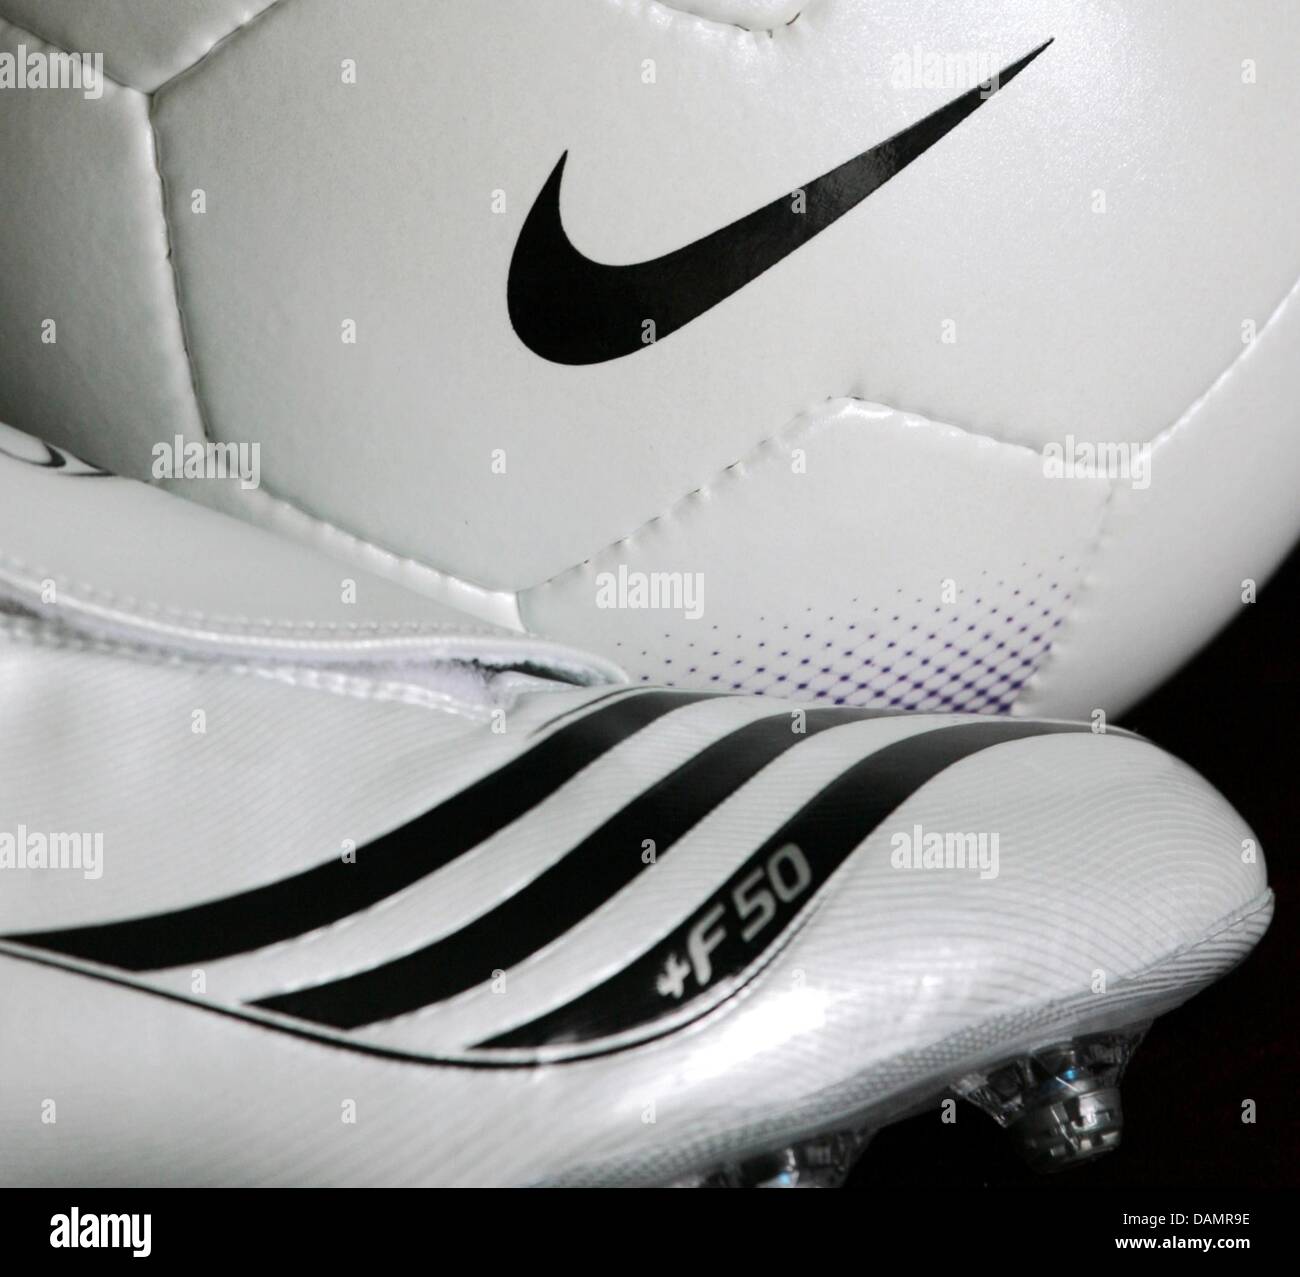 Adidas soccer shoe -Fotos und -Bildmaterial in hoher Auflösung – Alamy